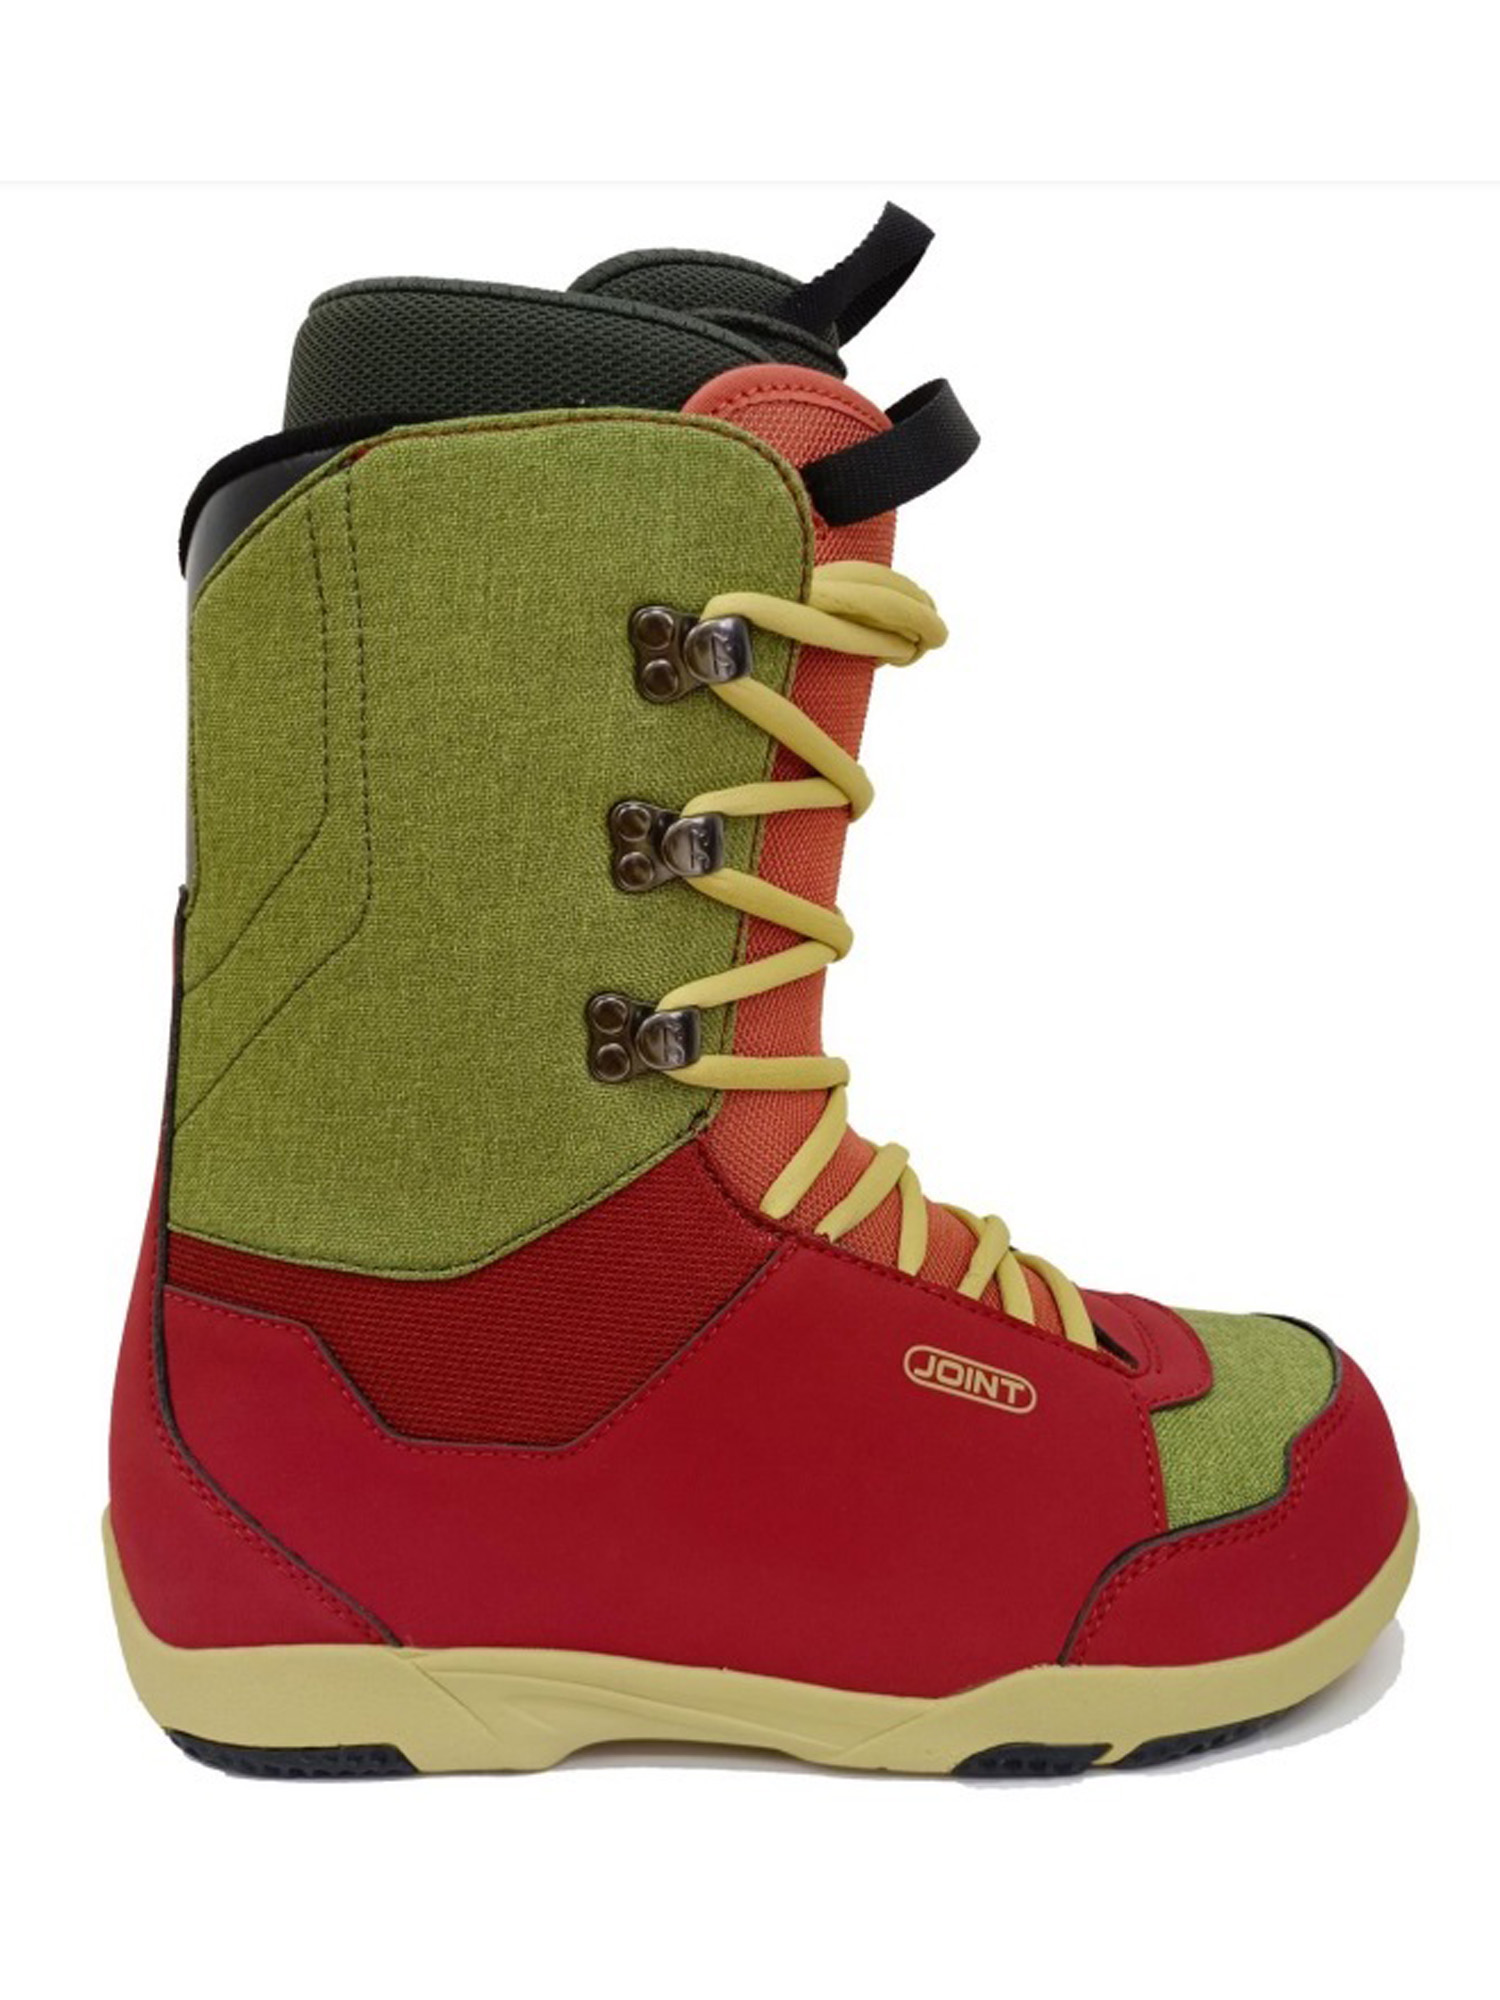 Ботинки для сноуборда Joint  Dovetail 2023 dark red/light brown 27 см